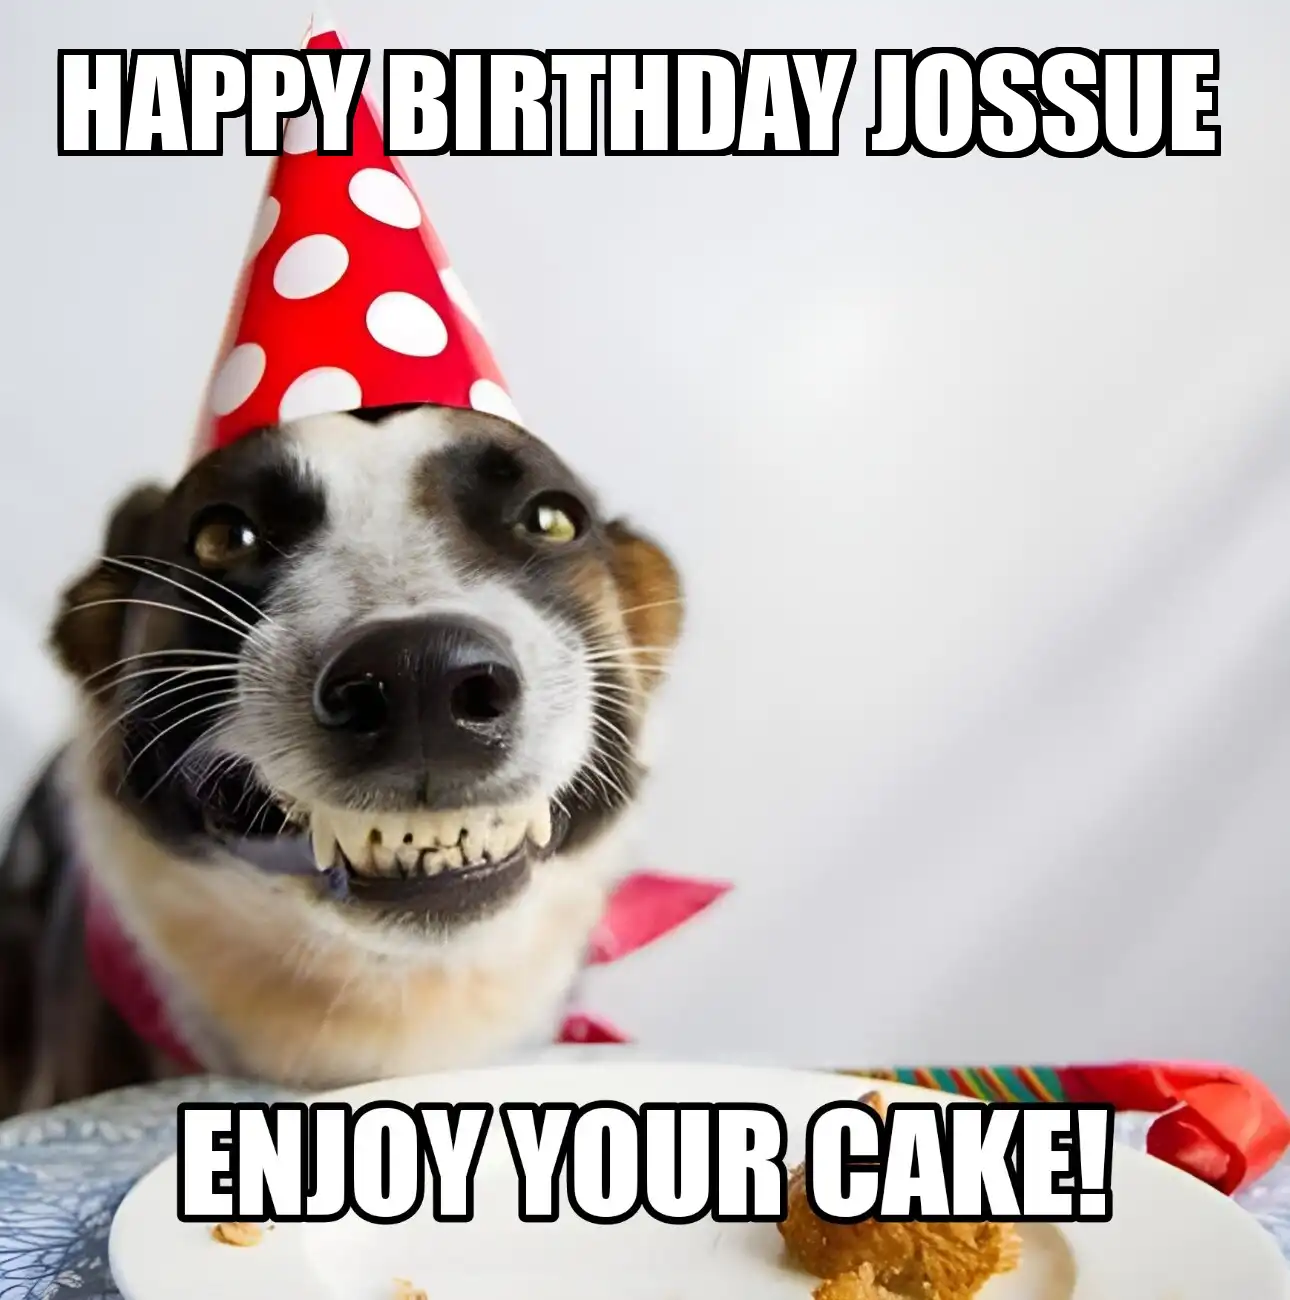 Happy Birthday Jossue Enjoy Your Cake Dog Meme